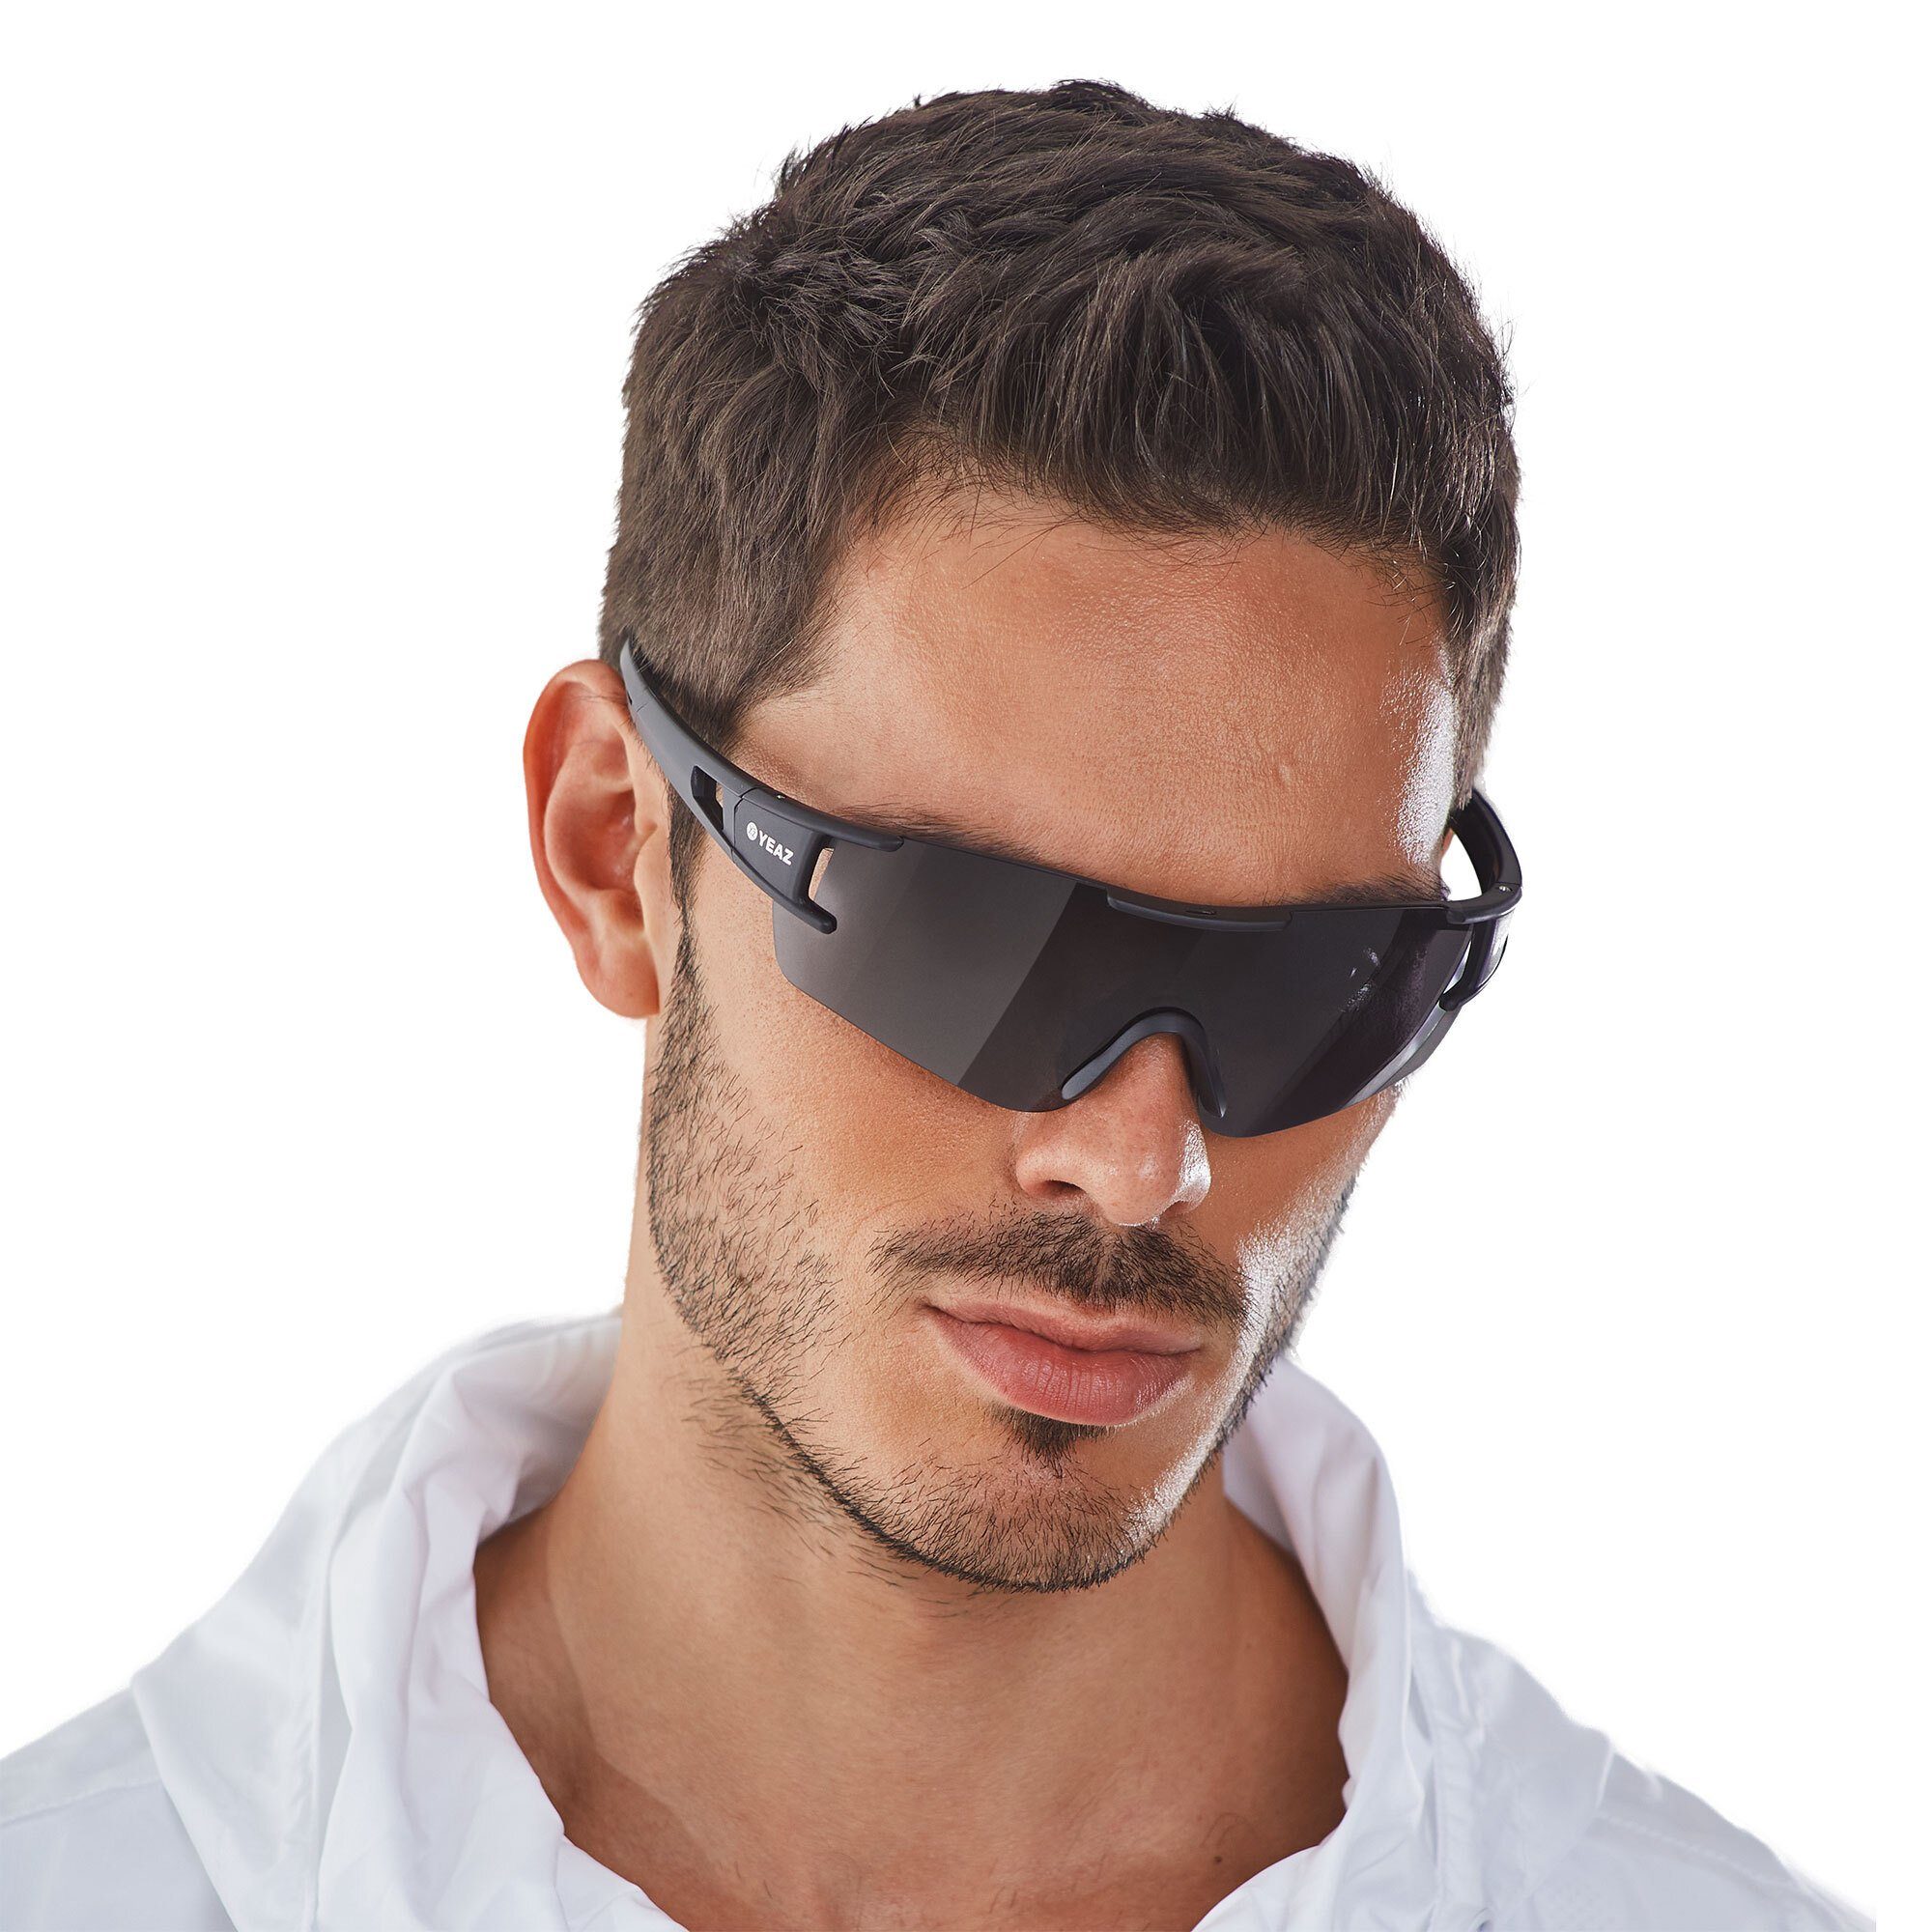 YEAZ Sportbrille SUNBLOW sport-sonnenbrille black/grey, Guter Schutz bei optimierter Sicht